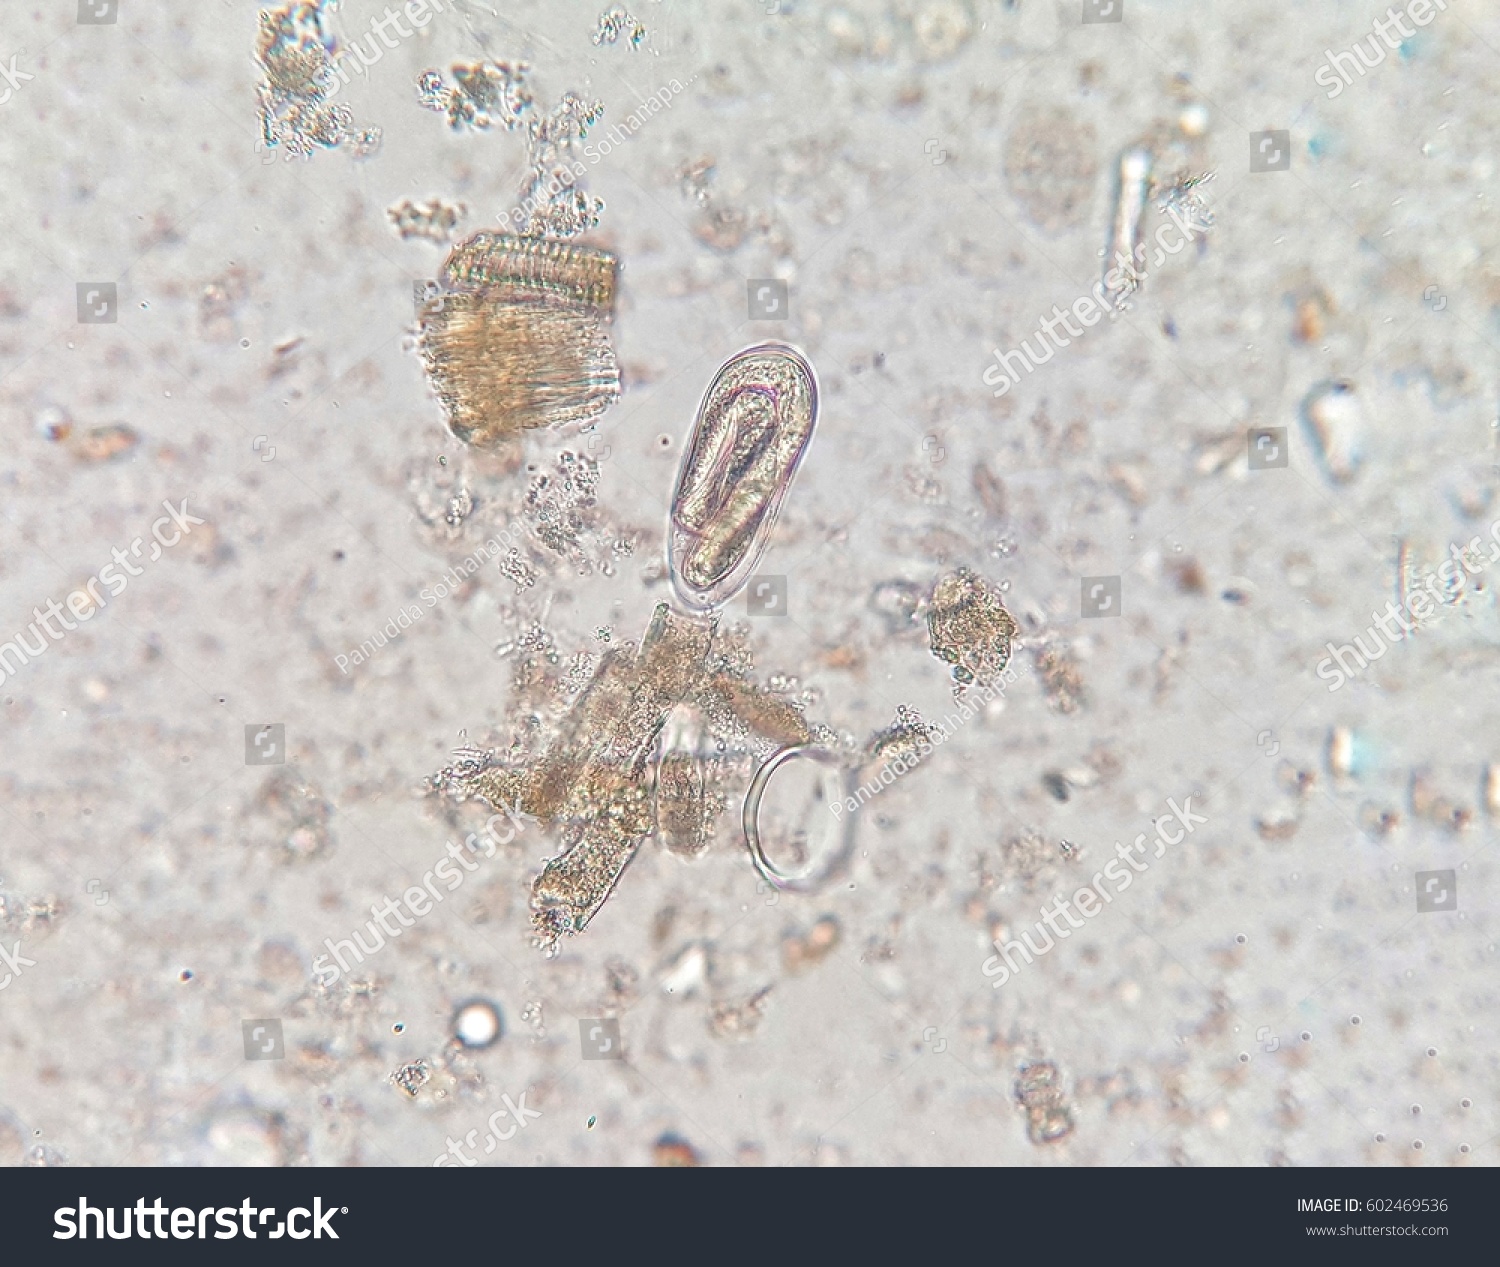 enterobius vermicularis in stool viermi la copii de ce vin viermii